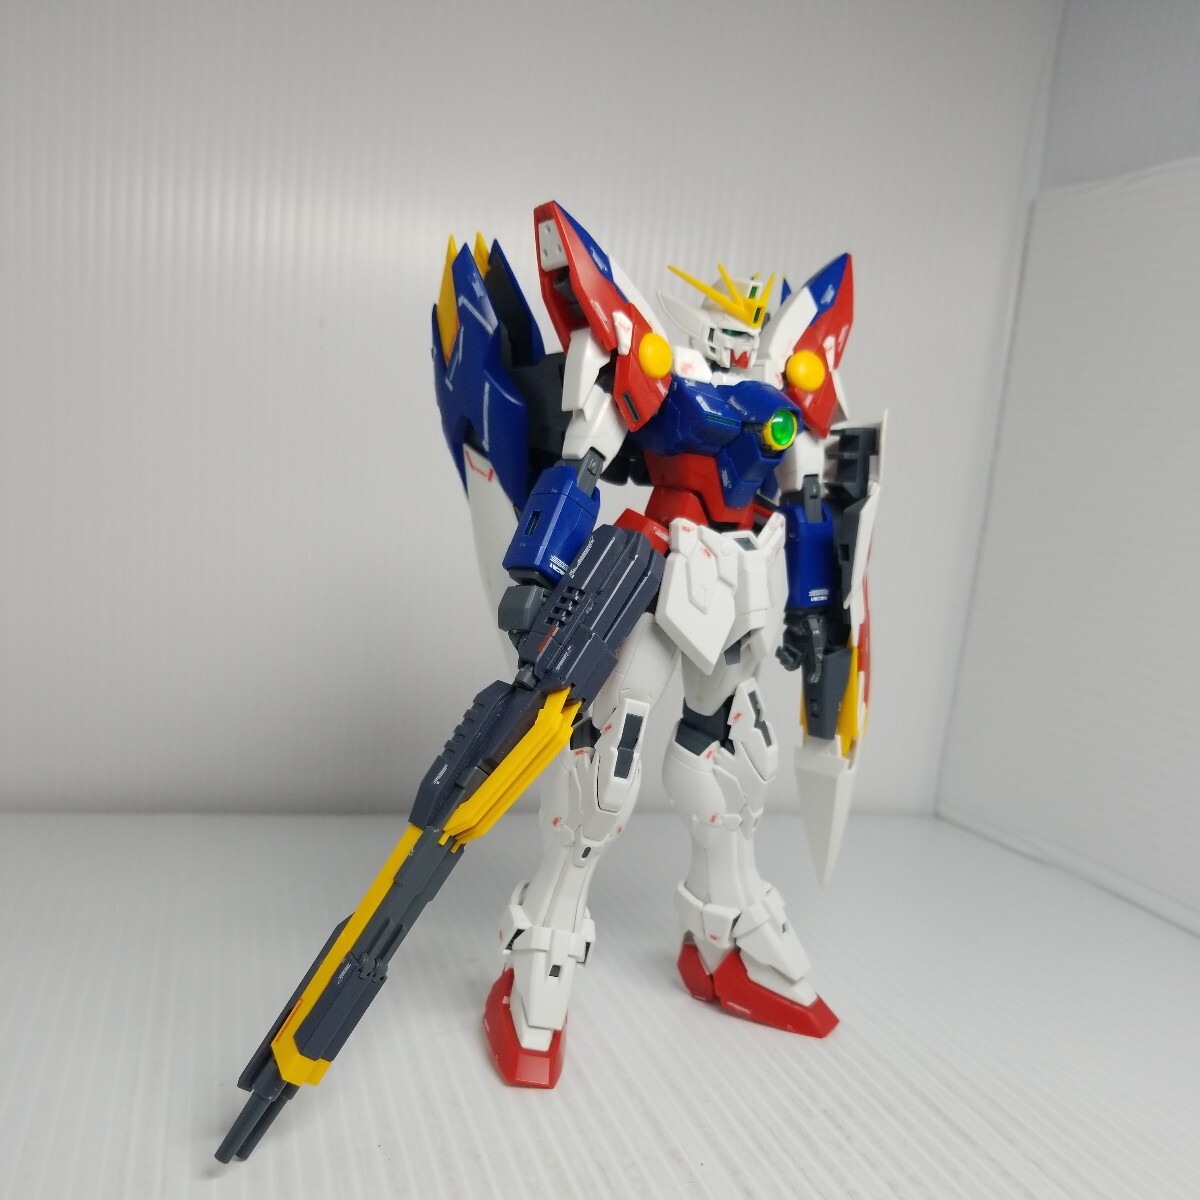 A-160g 3/26 MG Wing Gundam включение в покупку возможно gun pra Junk 